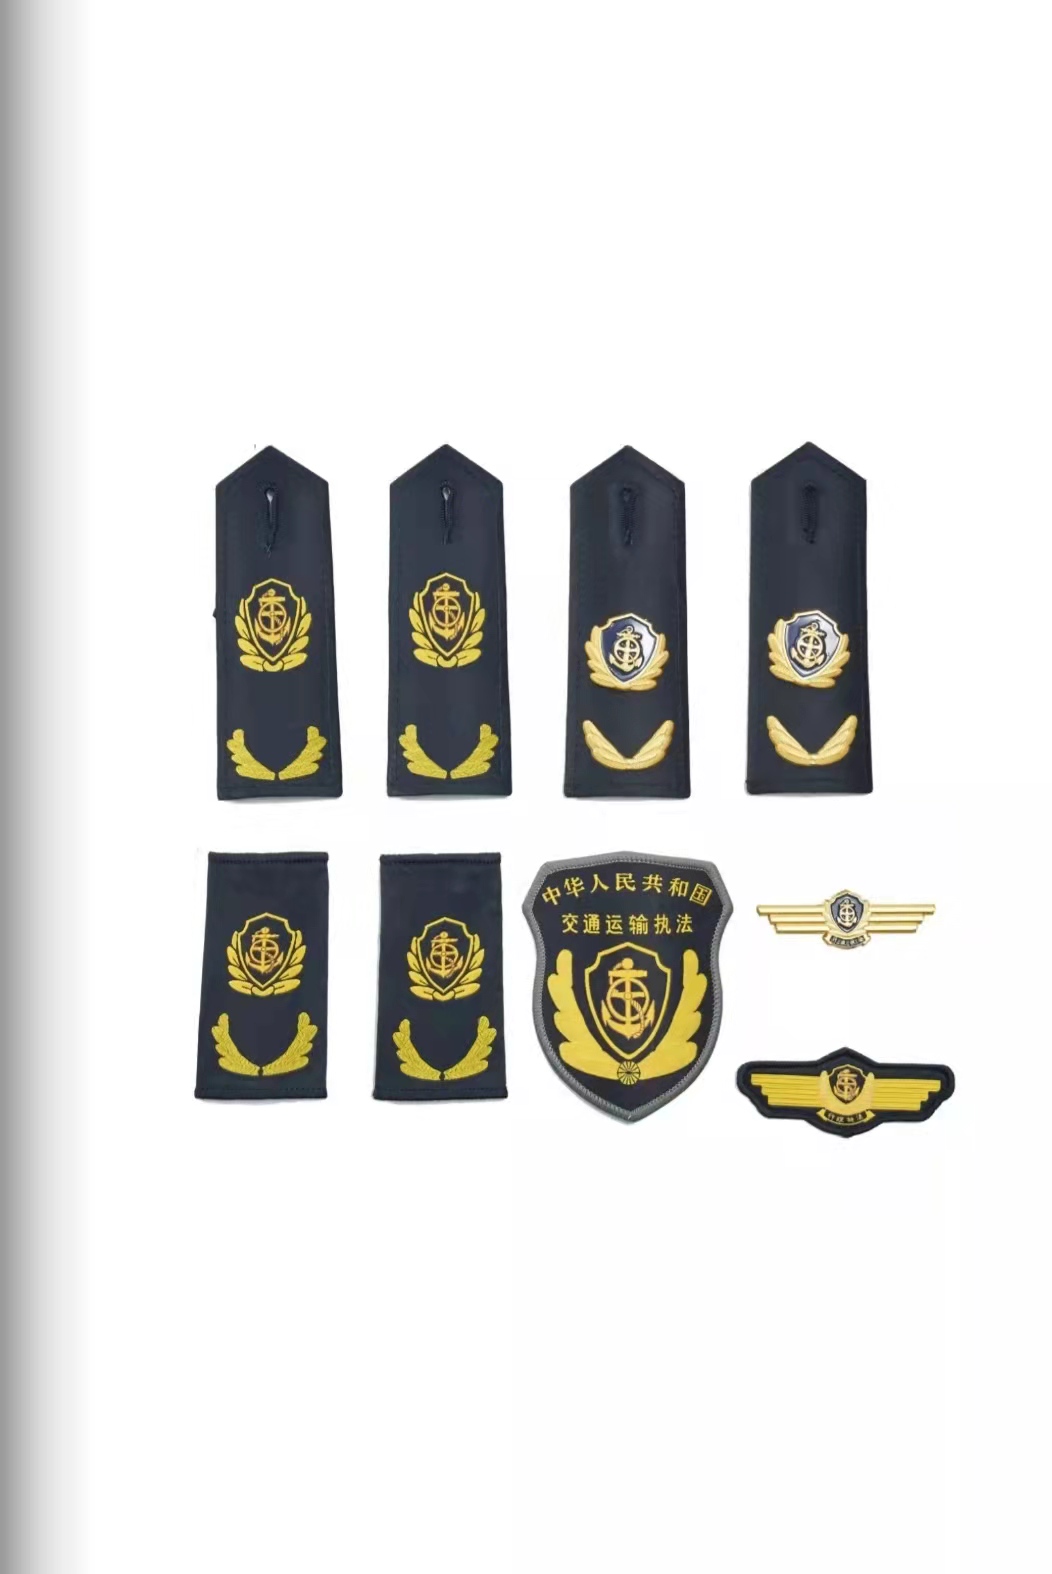 佳木斯六部门统一交通运输执法服装标志